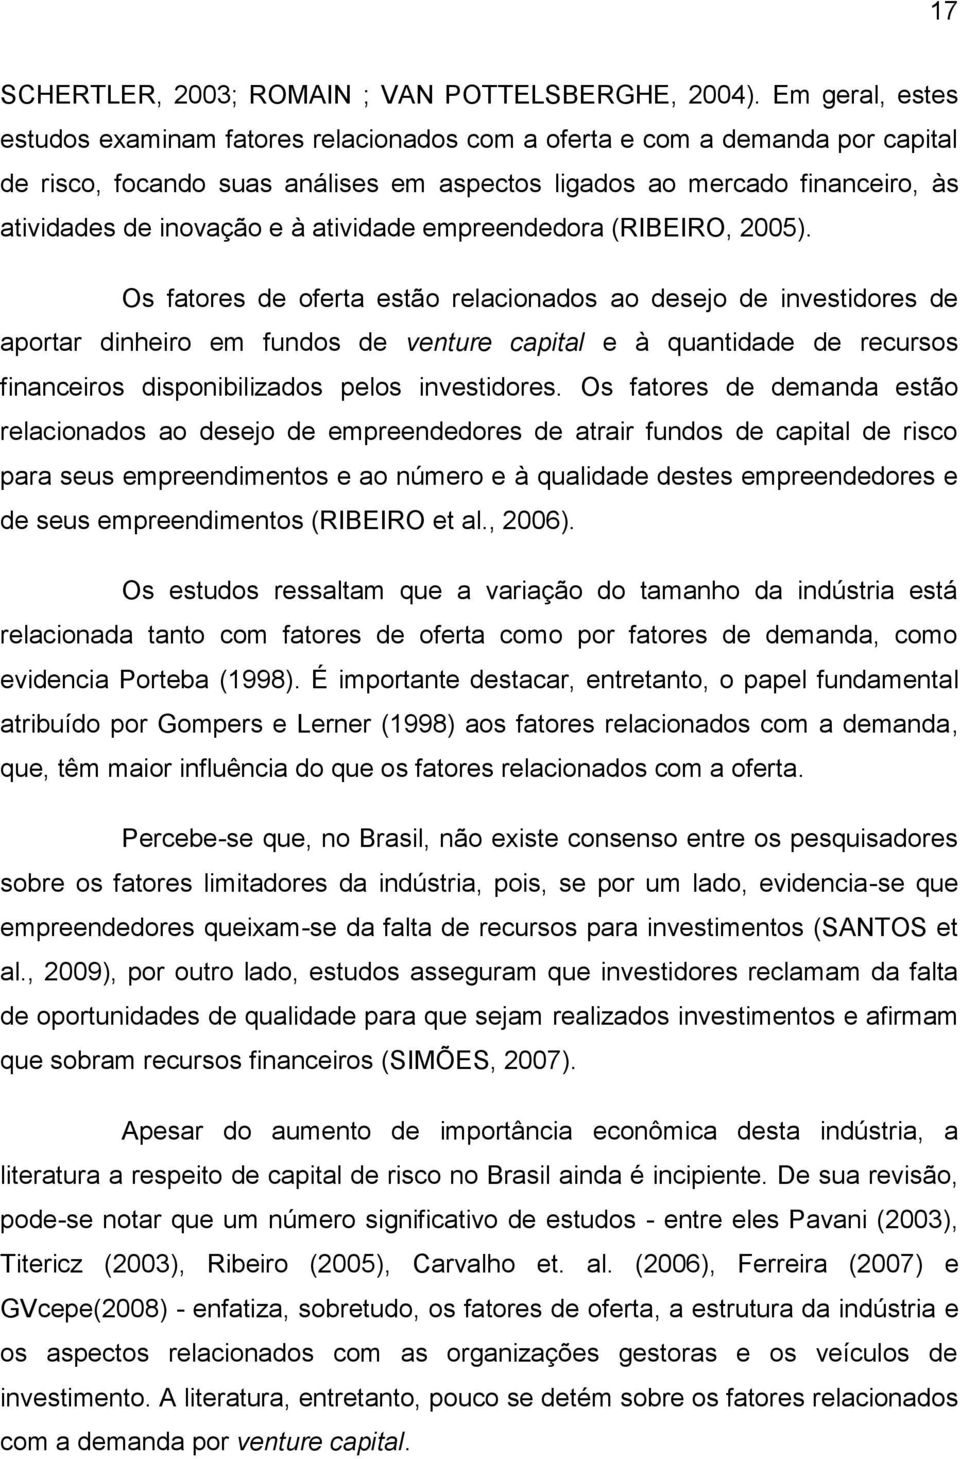 atividade empreendedora (RIBEIRO, 2005).